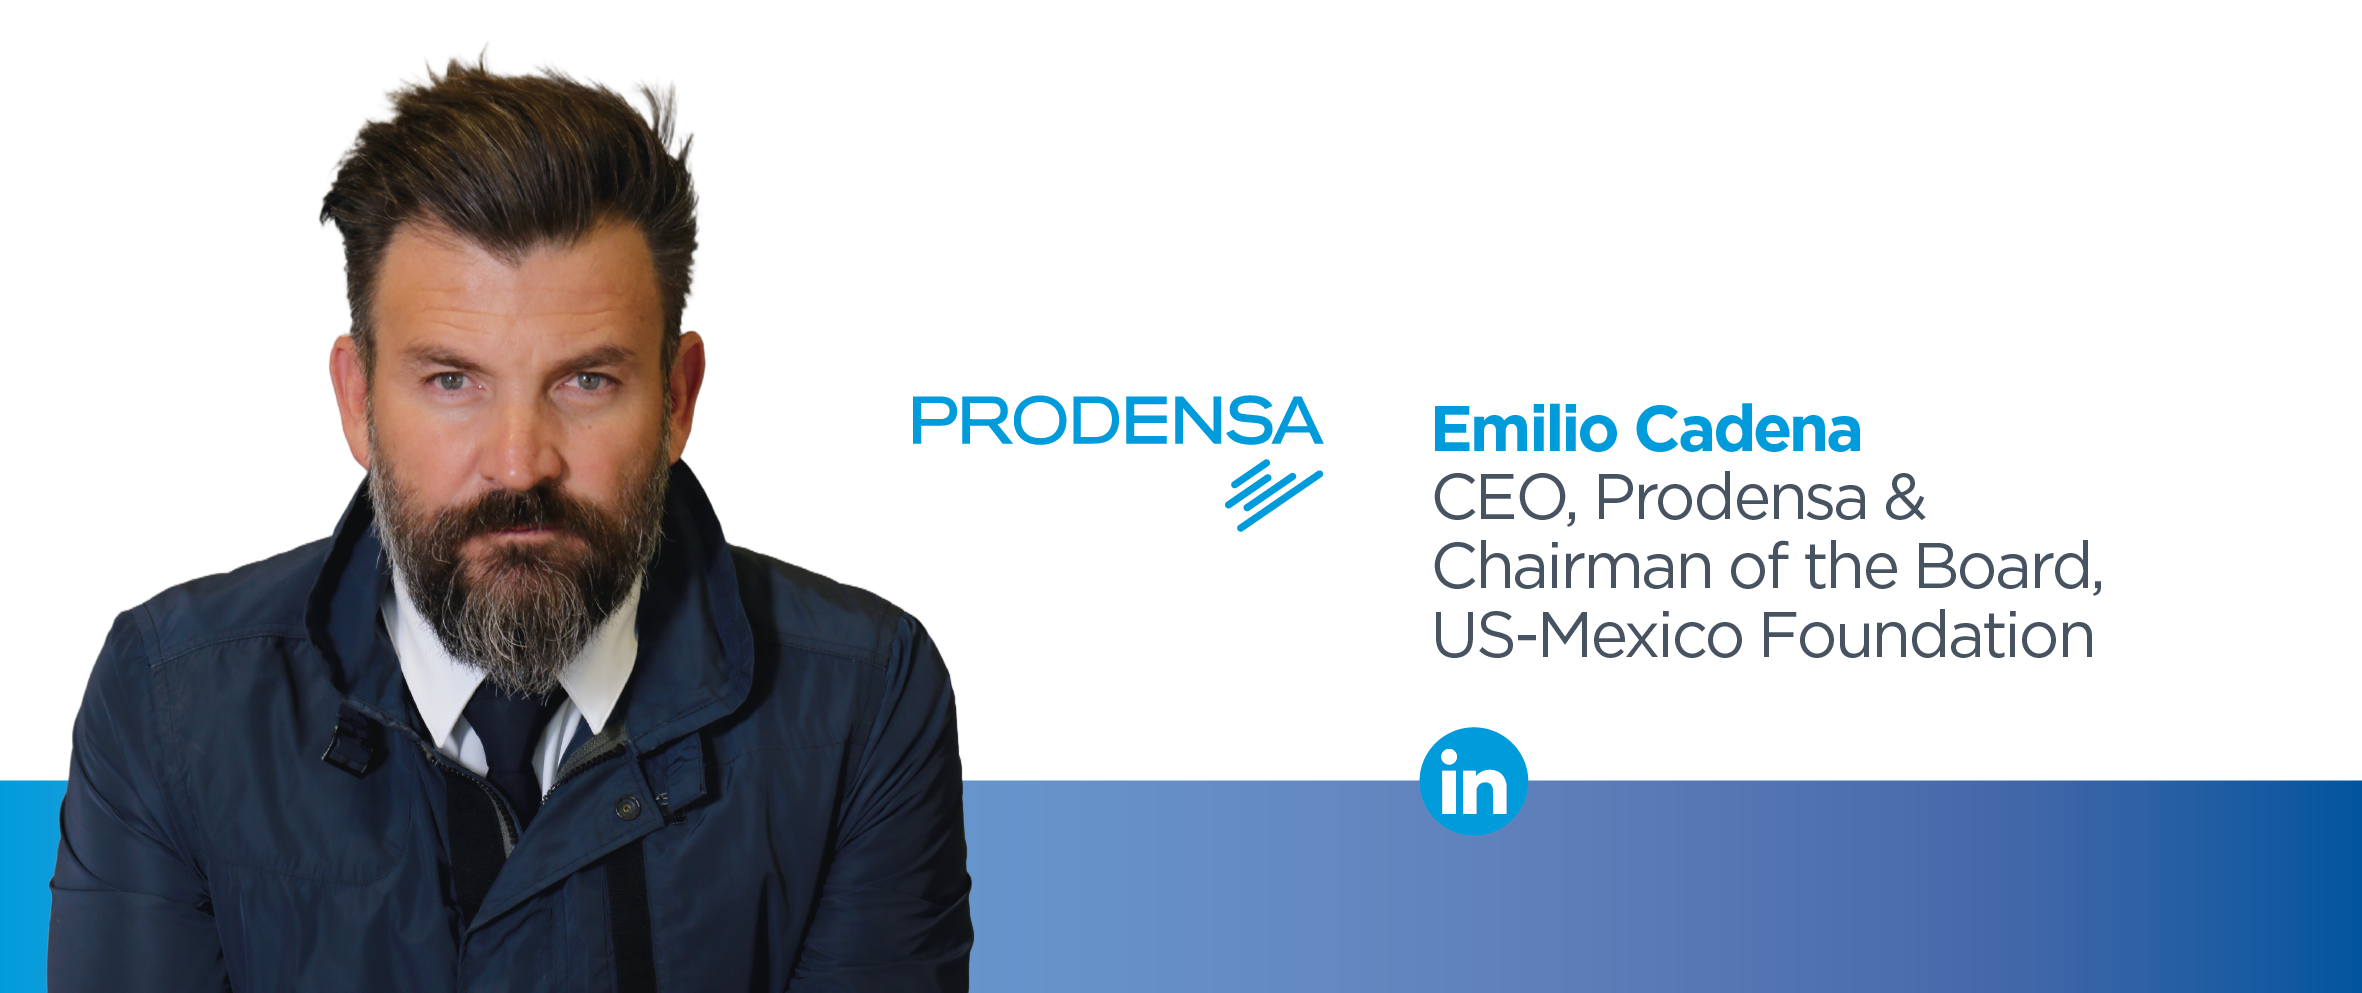 Emilio-Cadena-CEO-Prodensa